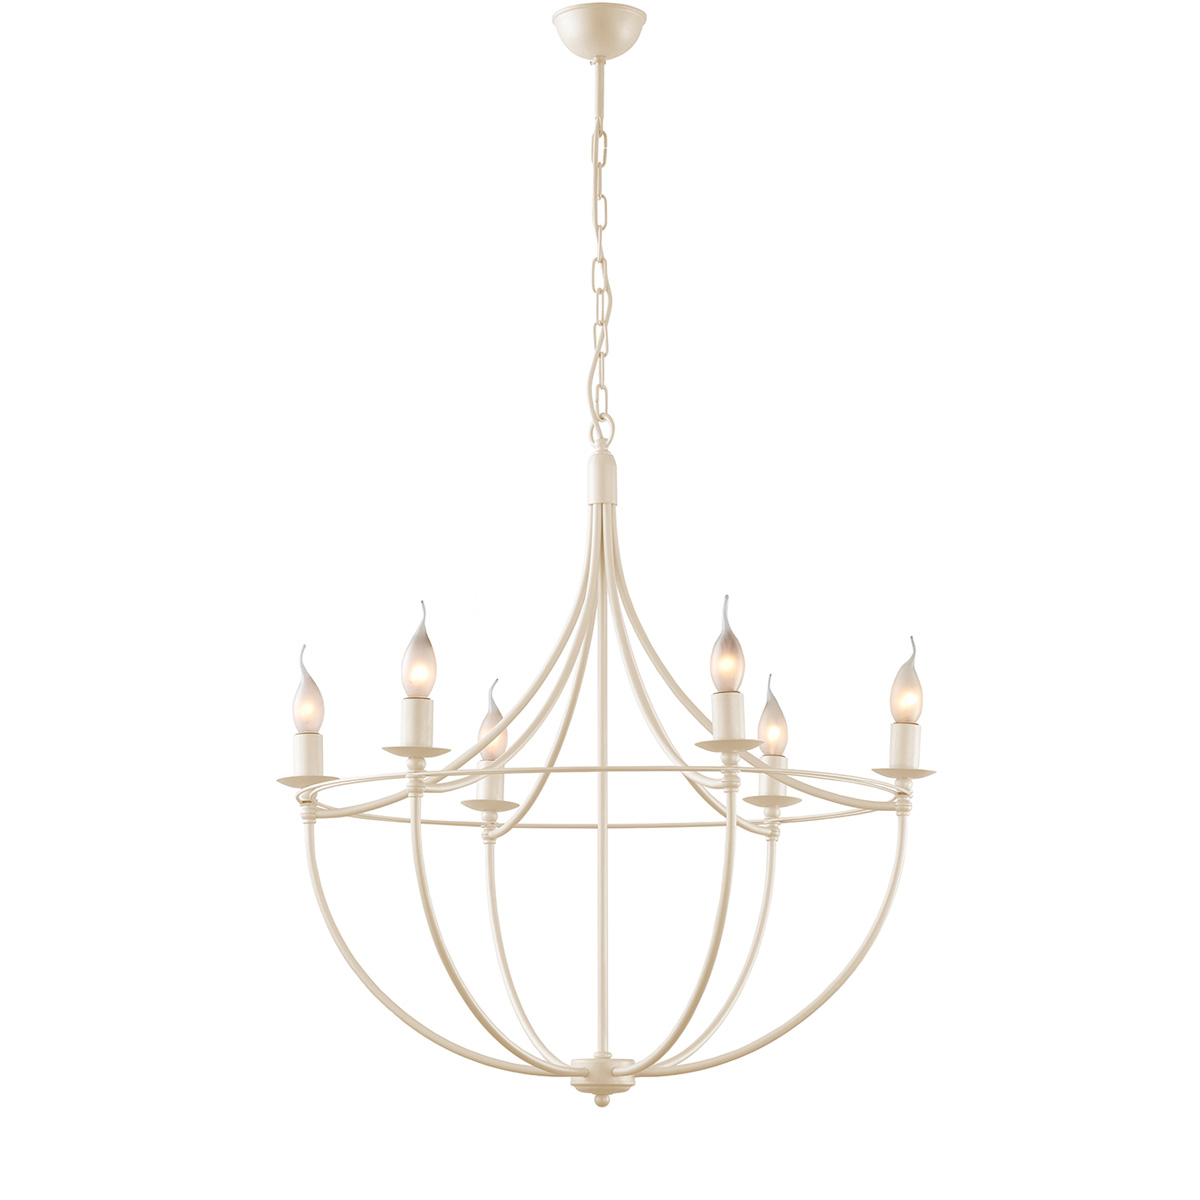 Παραδοσιακό 6φωτο φωτιστικό σε εκρού χρώμα VILLAGE ecru rustic 6-bulb chandelier